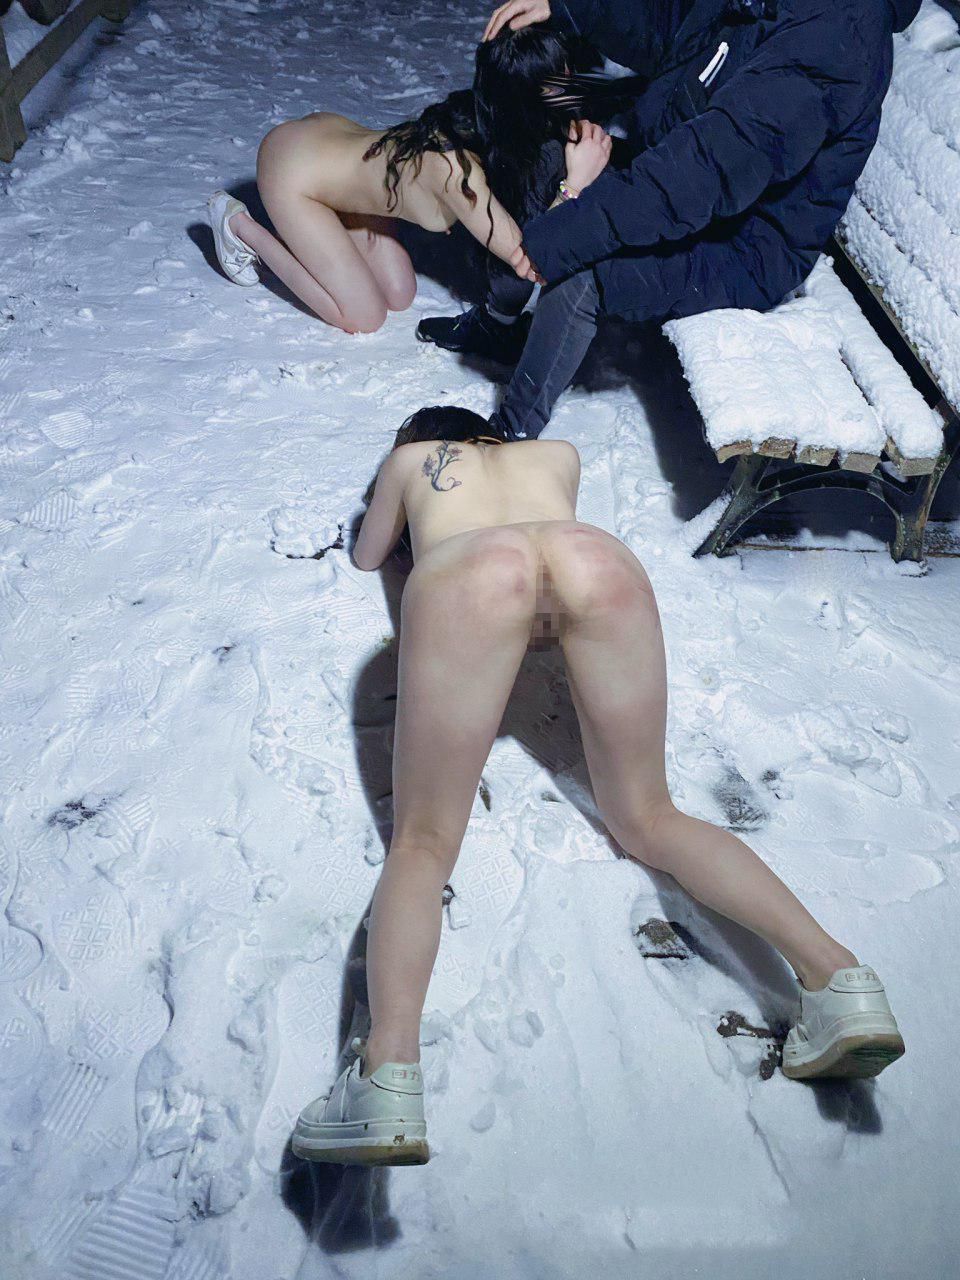 大雪の中セフレ2人を全裸にした野外露出ヌード画像 4